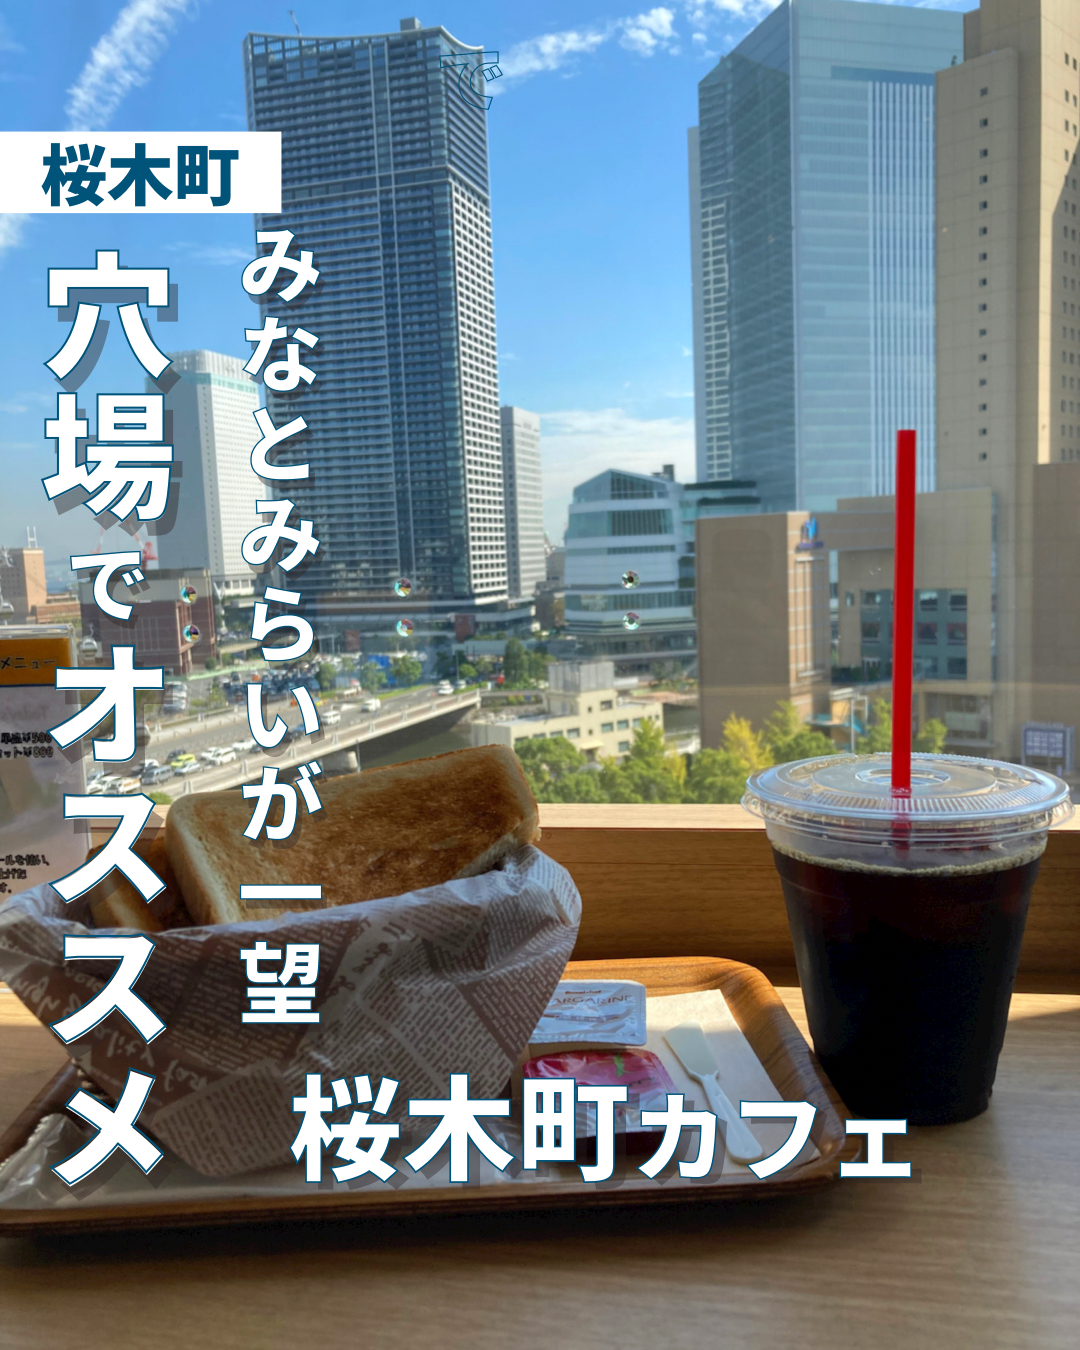 みなとみらいが一望 穴場でオススメの桜木町カフェ ゆき カフェ巡り 東京 神奈川が投稿したフォトブック Lemon8